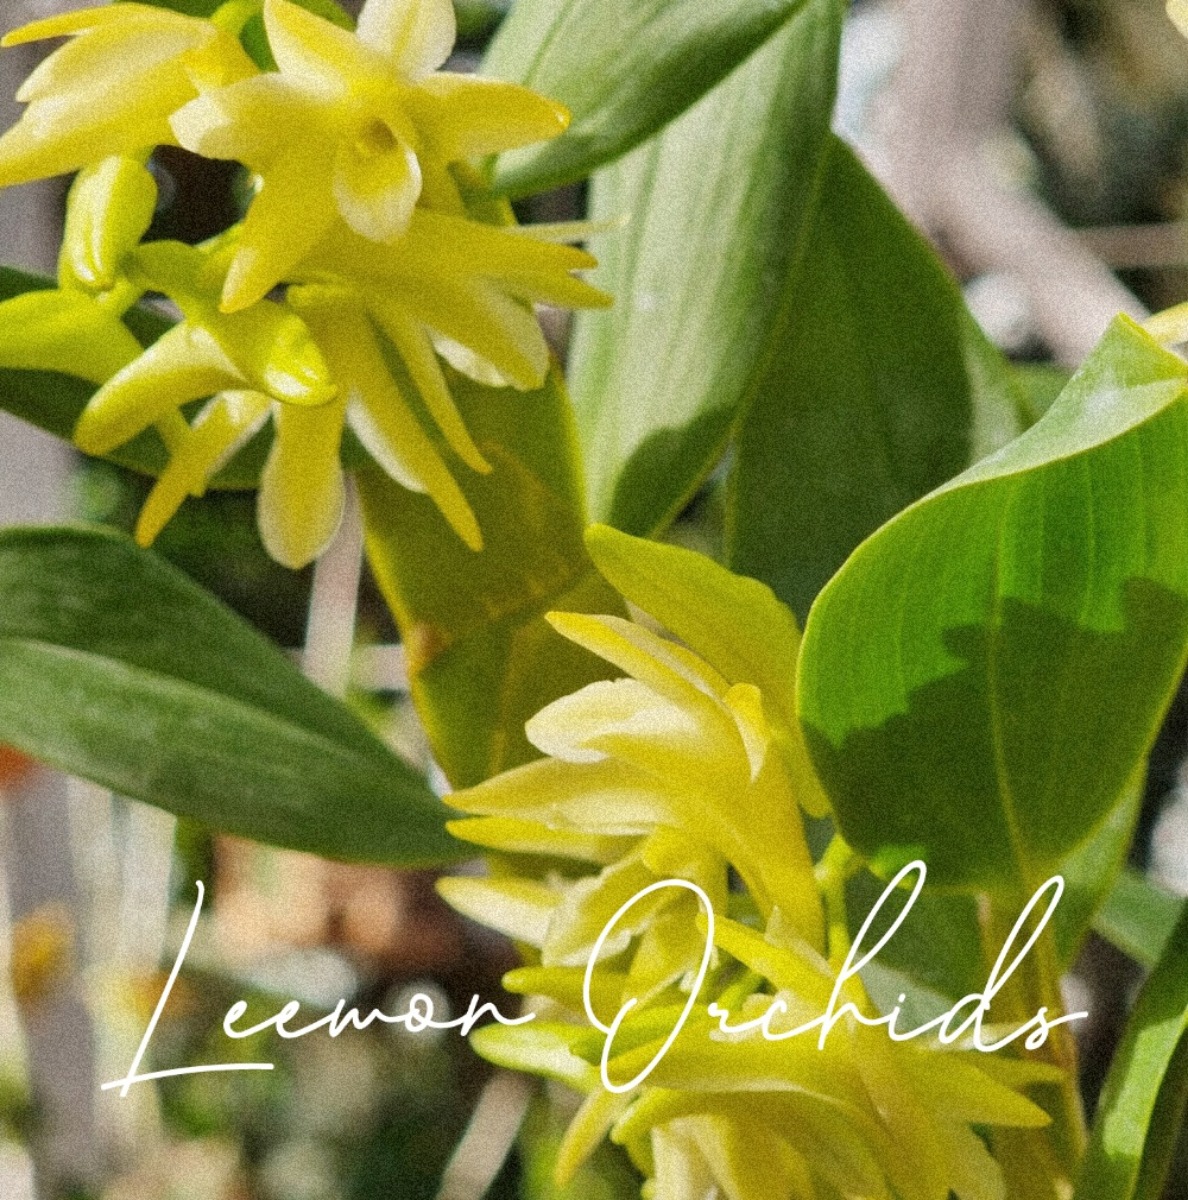 덴드로비움 프라티카우론 Dendrobium platycaulon (온라인 한정재고: 1) (현장판매 완료)